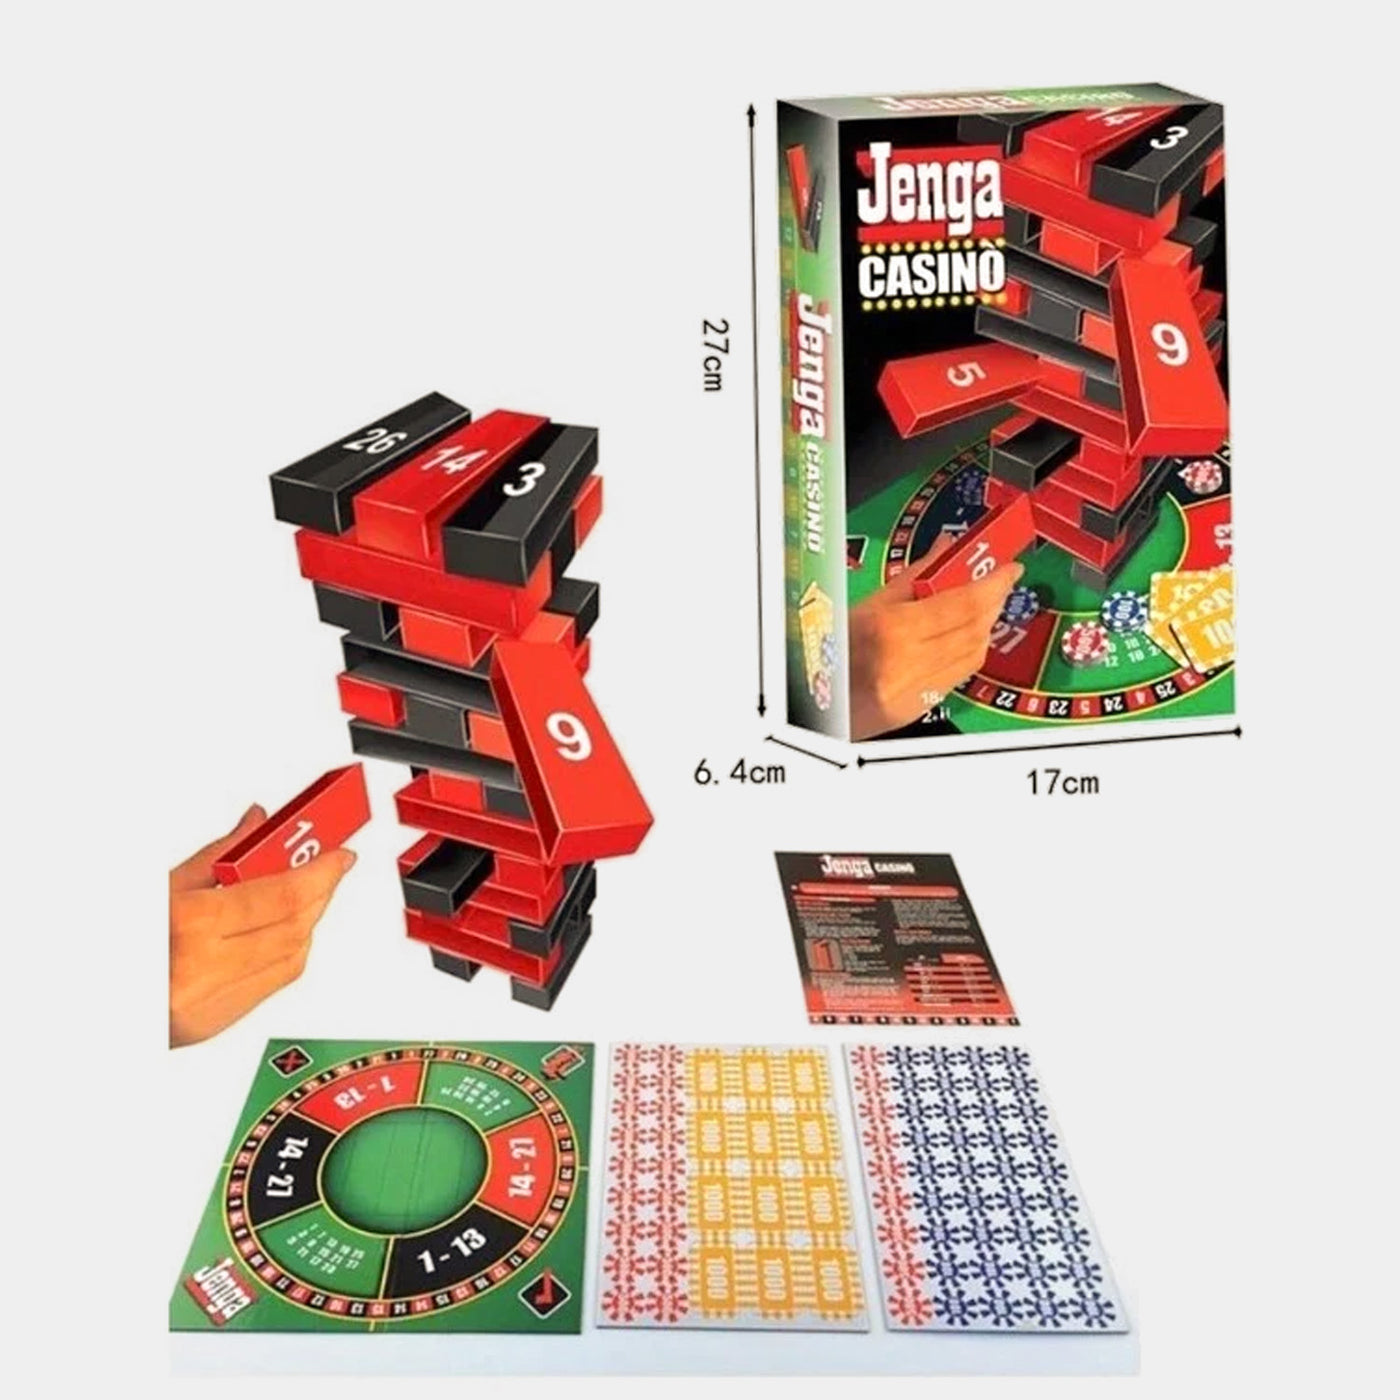 Jenga Casino Game 0149EYX